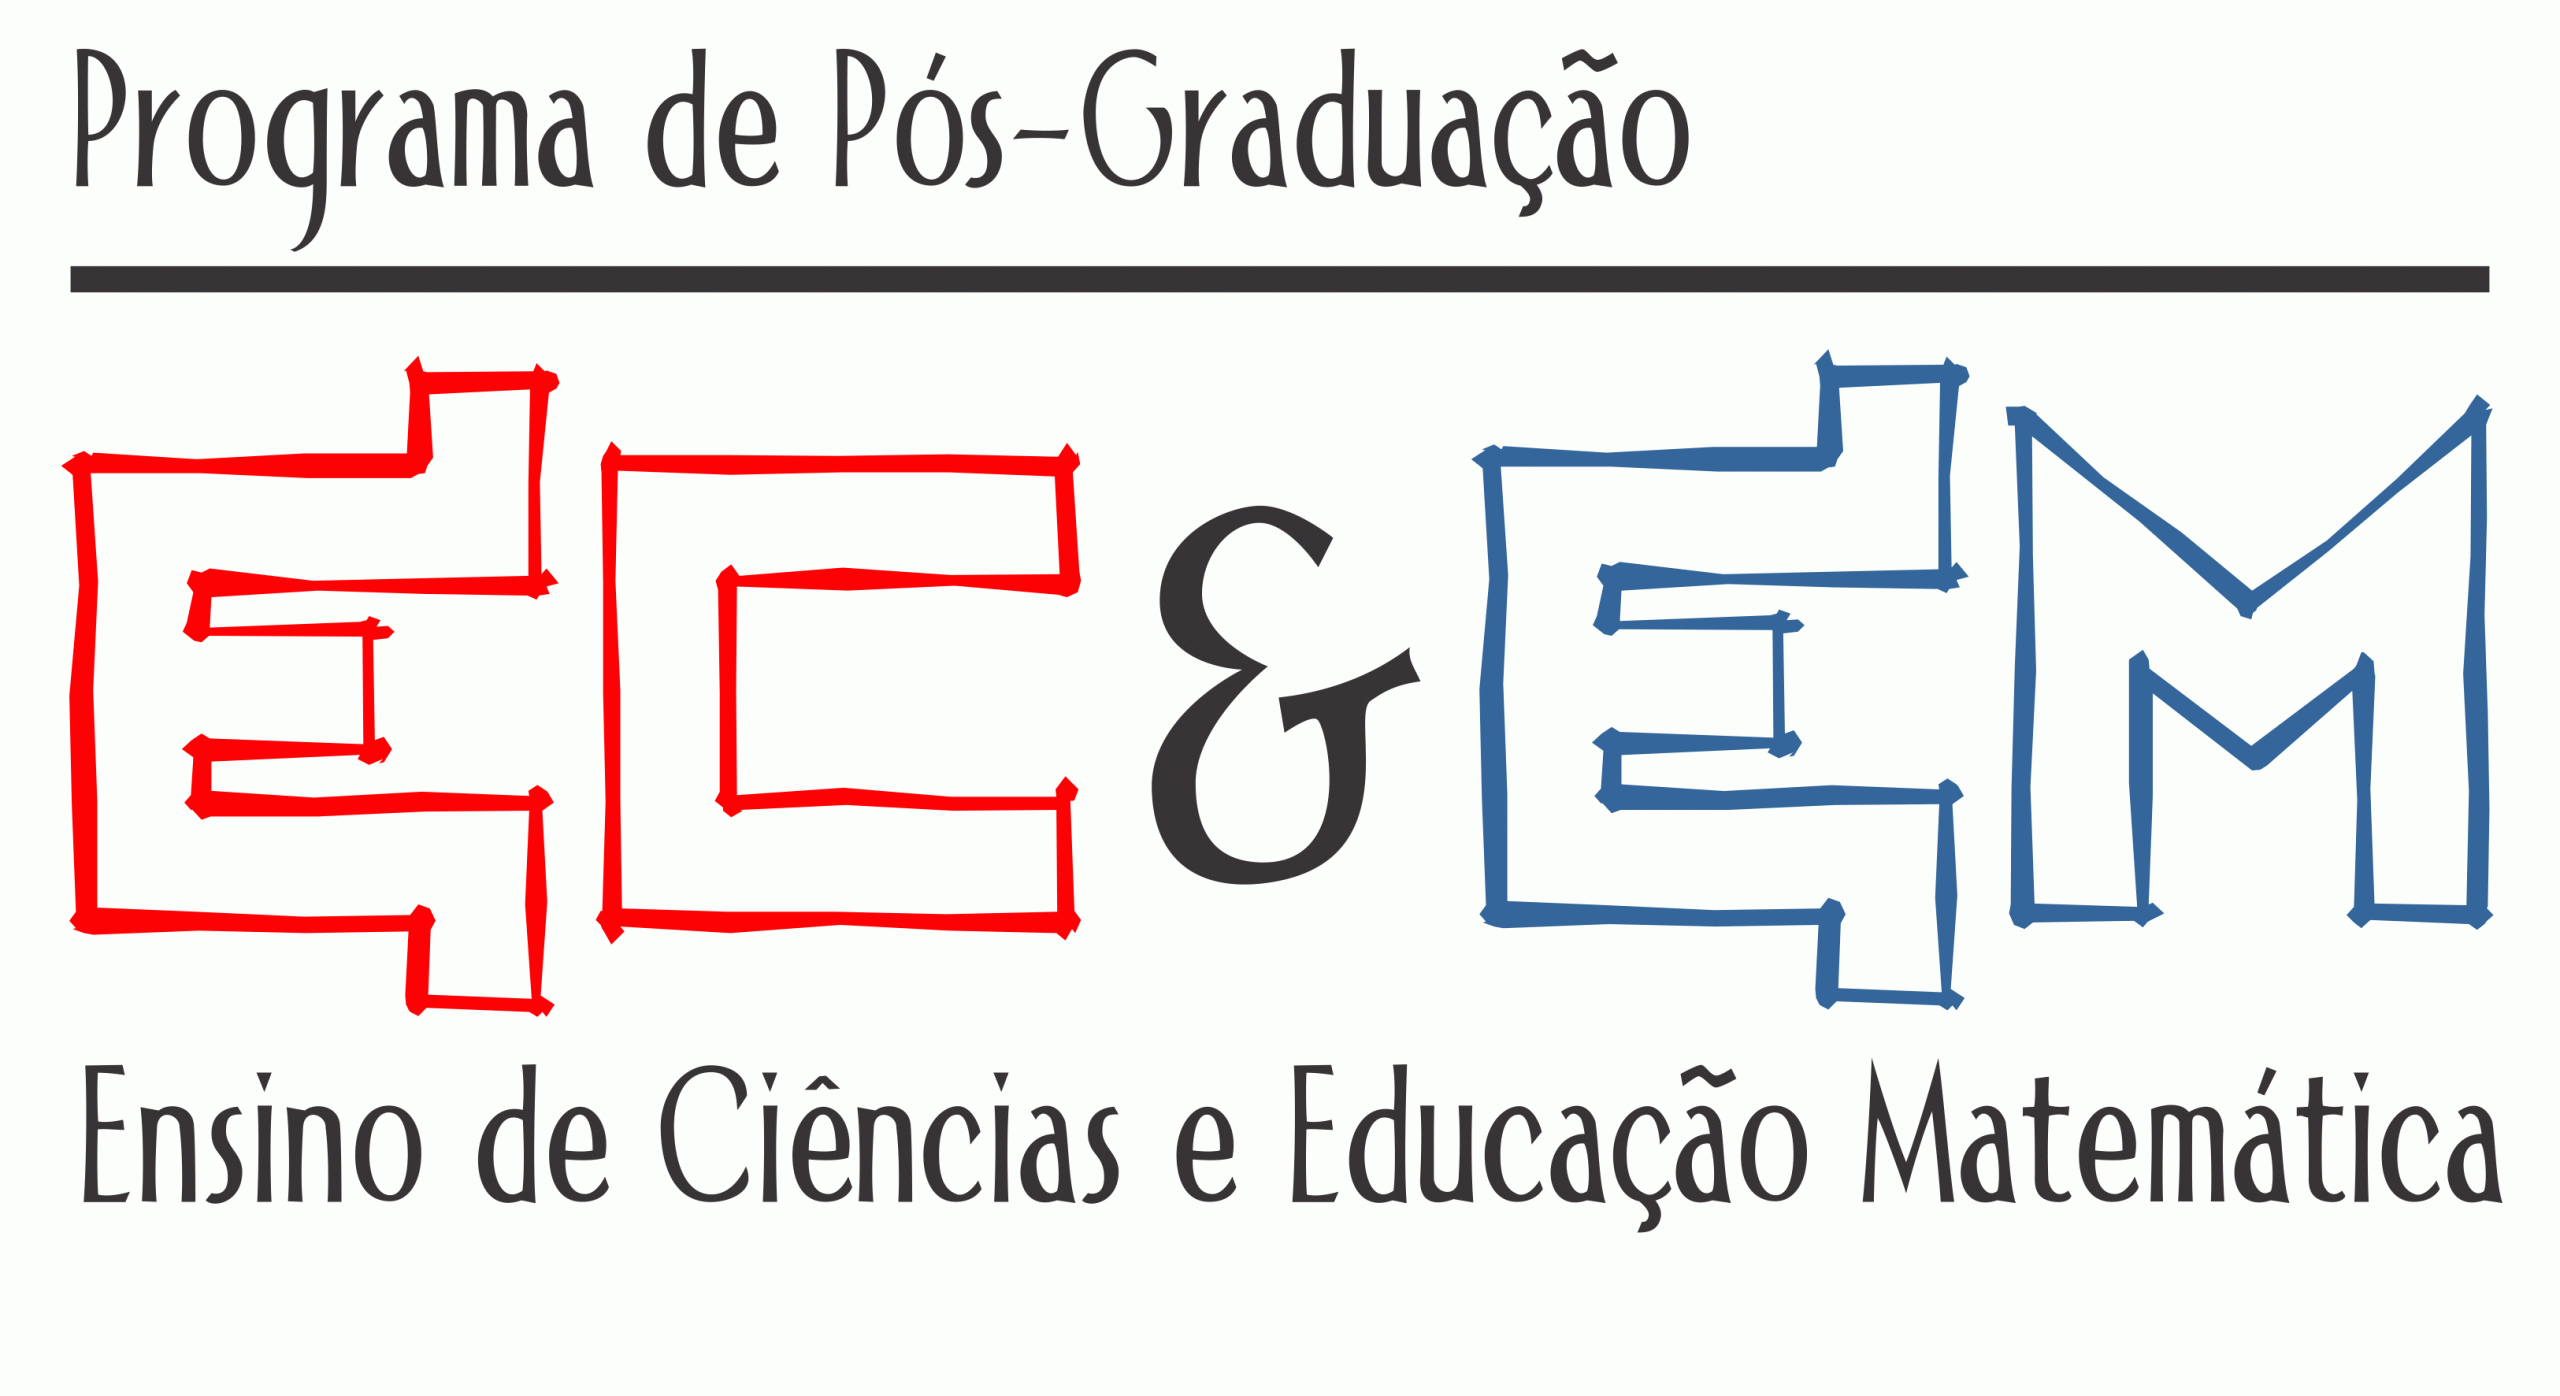 Programa de Pós-graduação em Ensino de Ciências e Educação Matemática